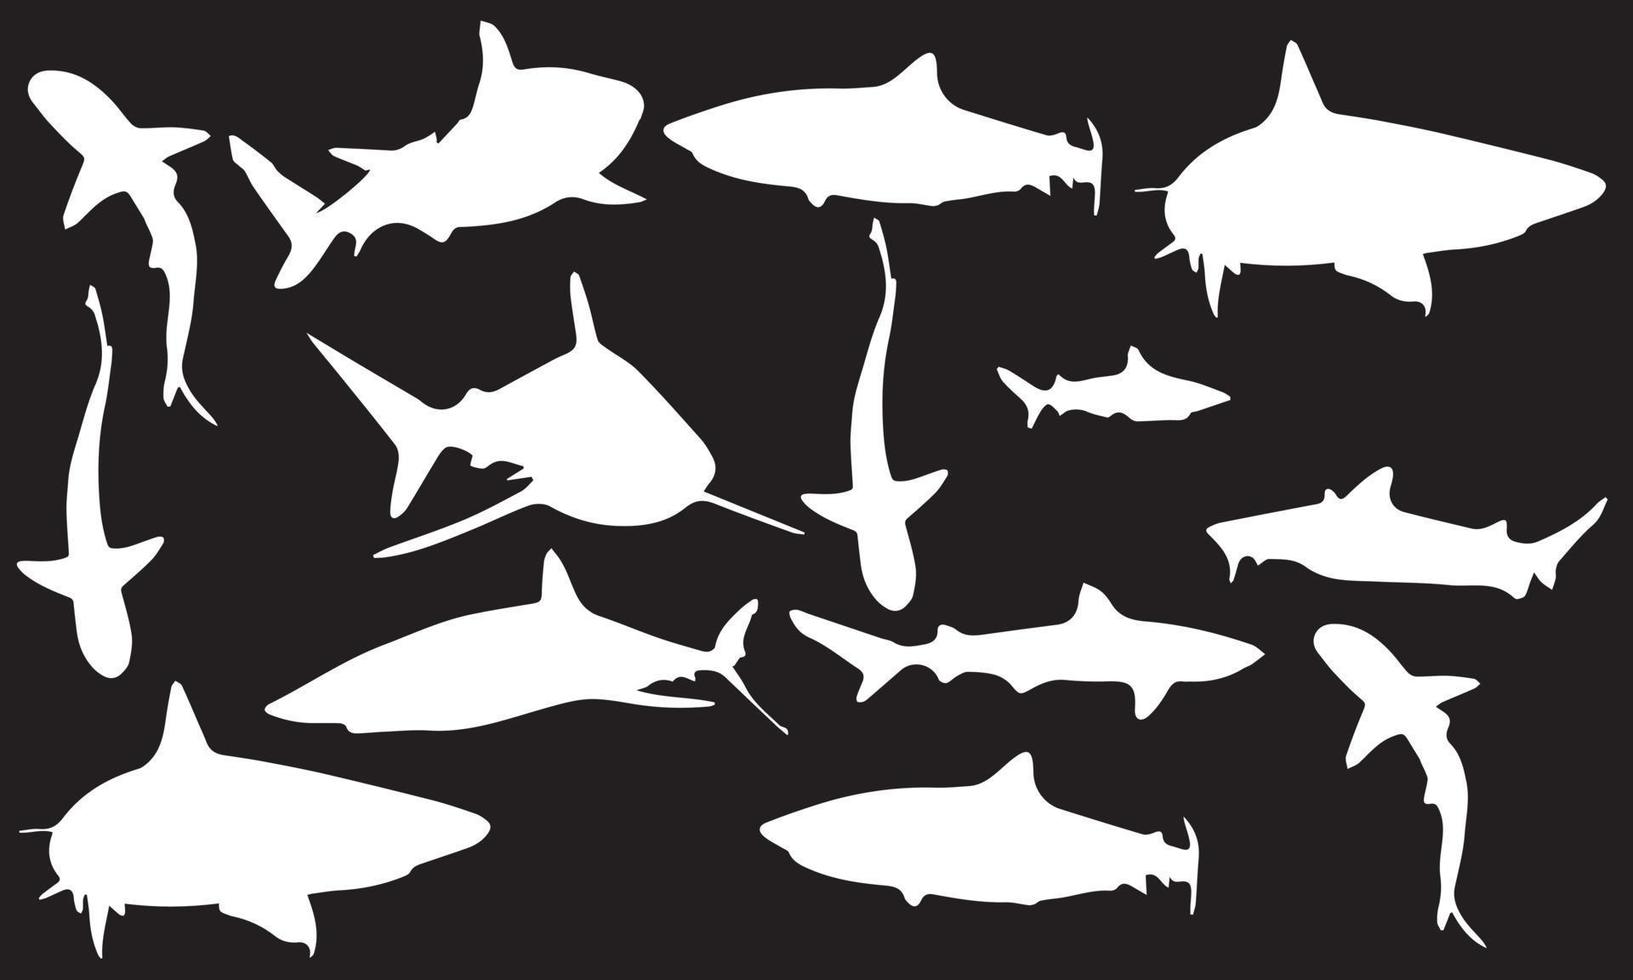 conception d'illustration vectorielle de silhouettes de prédateurs de requins collection de fond noir et blanc vecteur